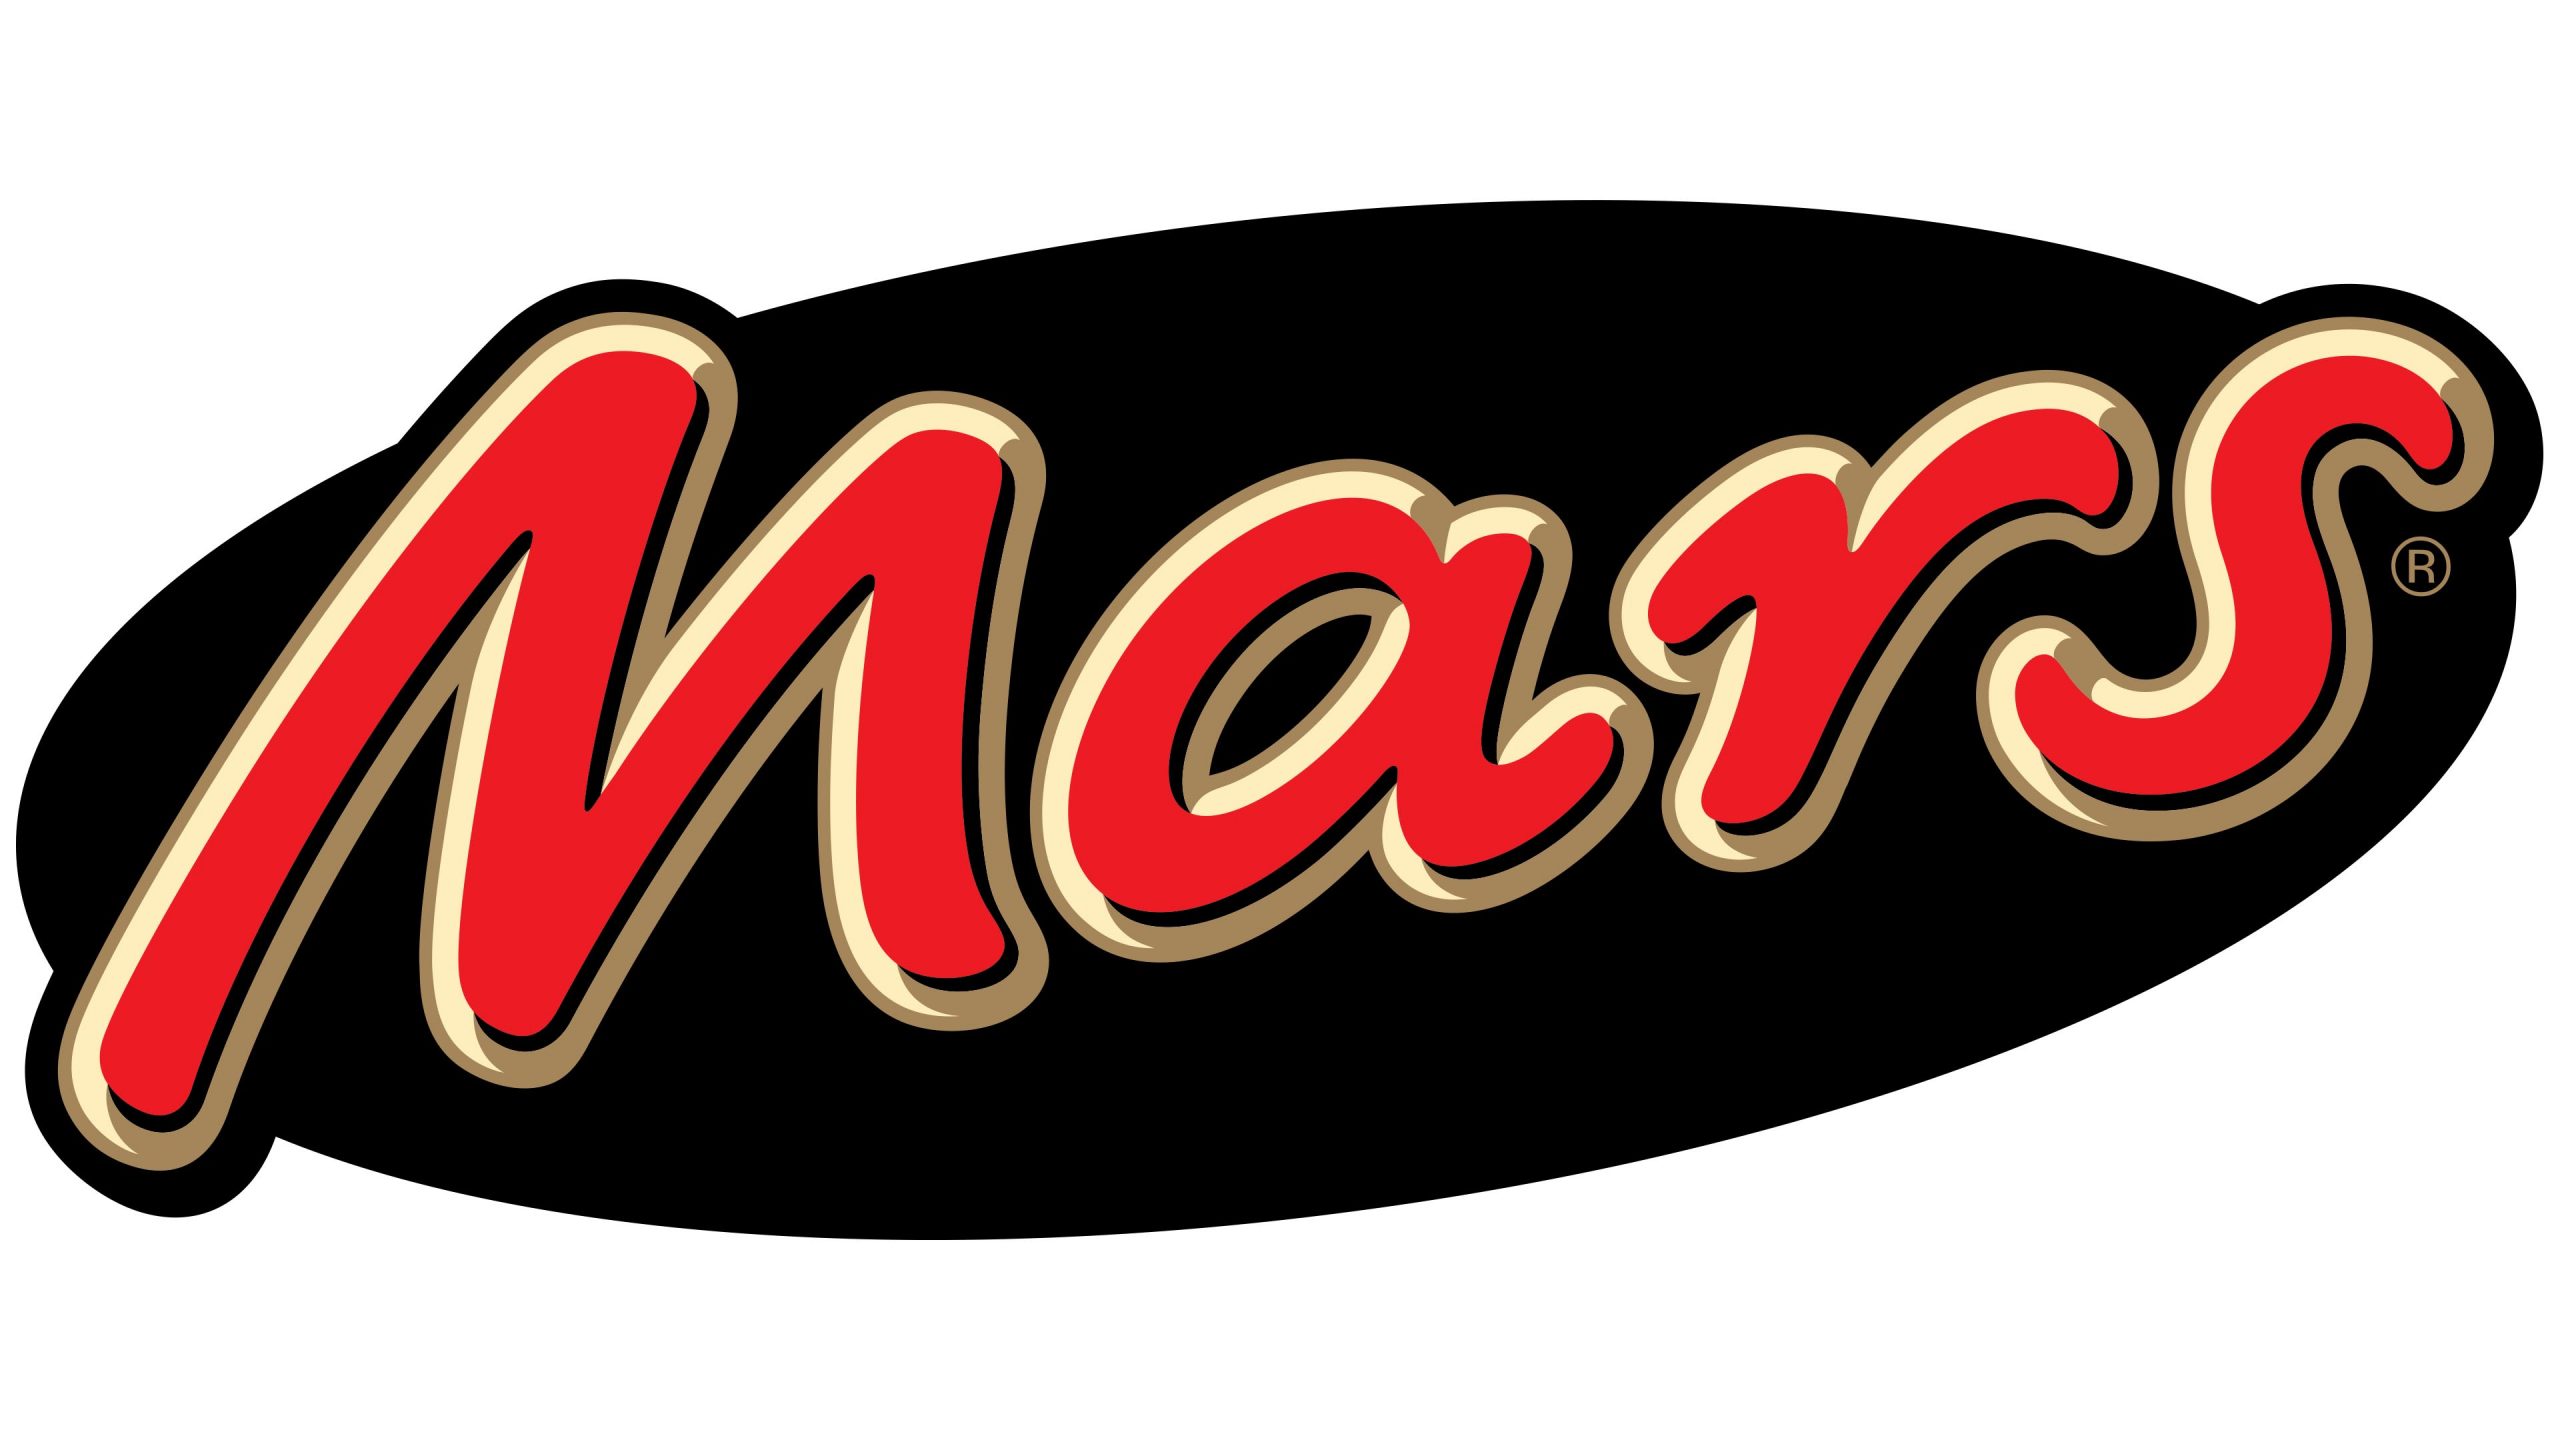 Mars logo.